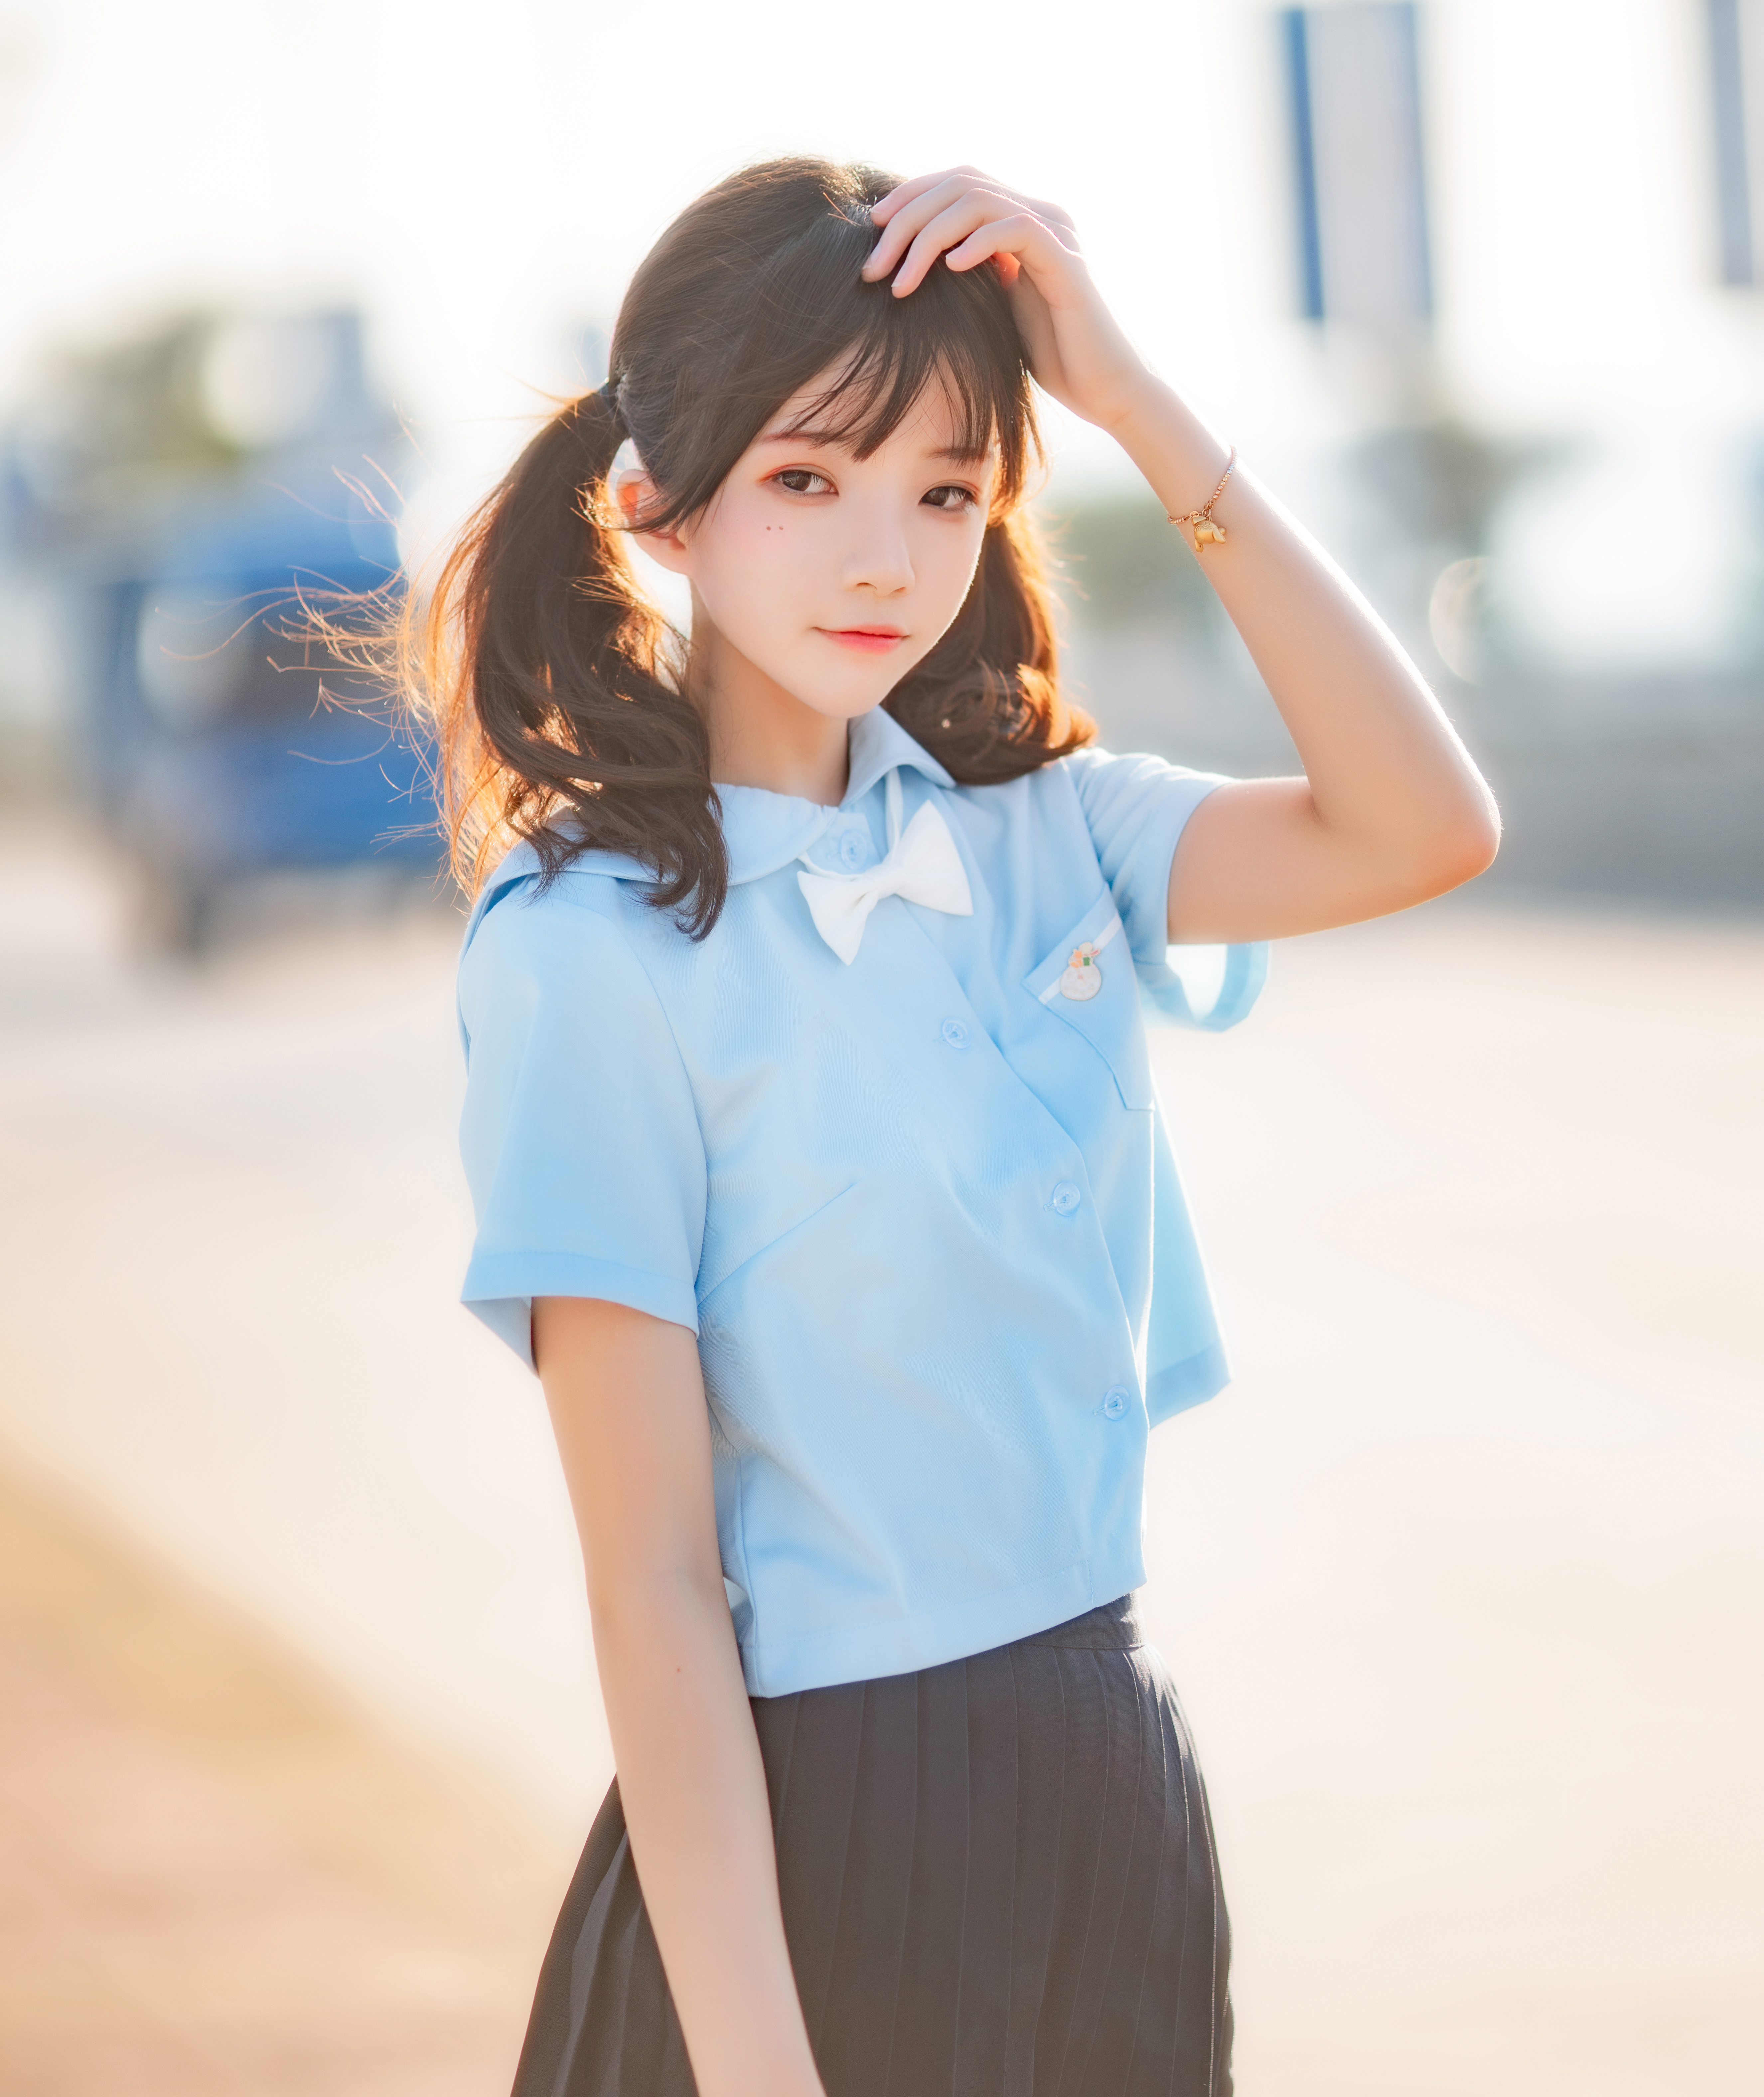 People 5304x6304 CherryNeko women model Asian cosplay JK schoolgirl school uniform brunette twintails women outdoors